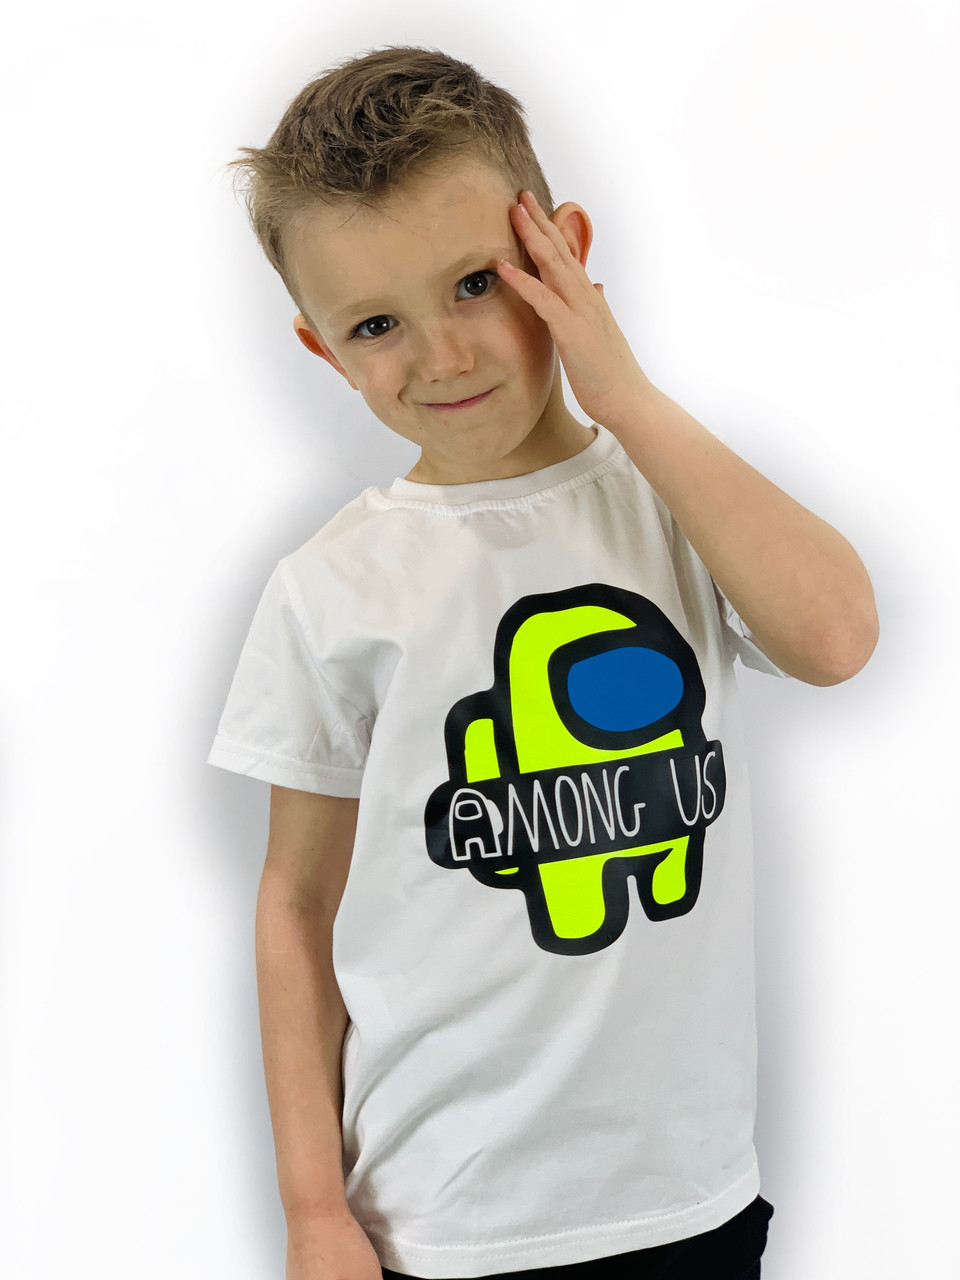 Дитяча футболка Among Us Амонг ас для підлітка: для хлопчика чи дівчинки